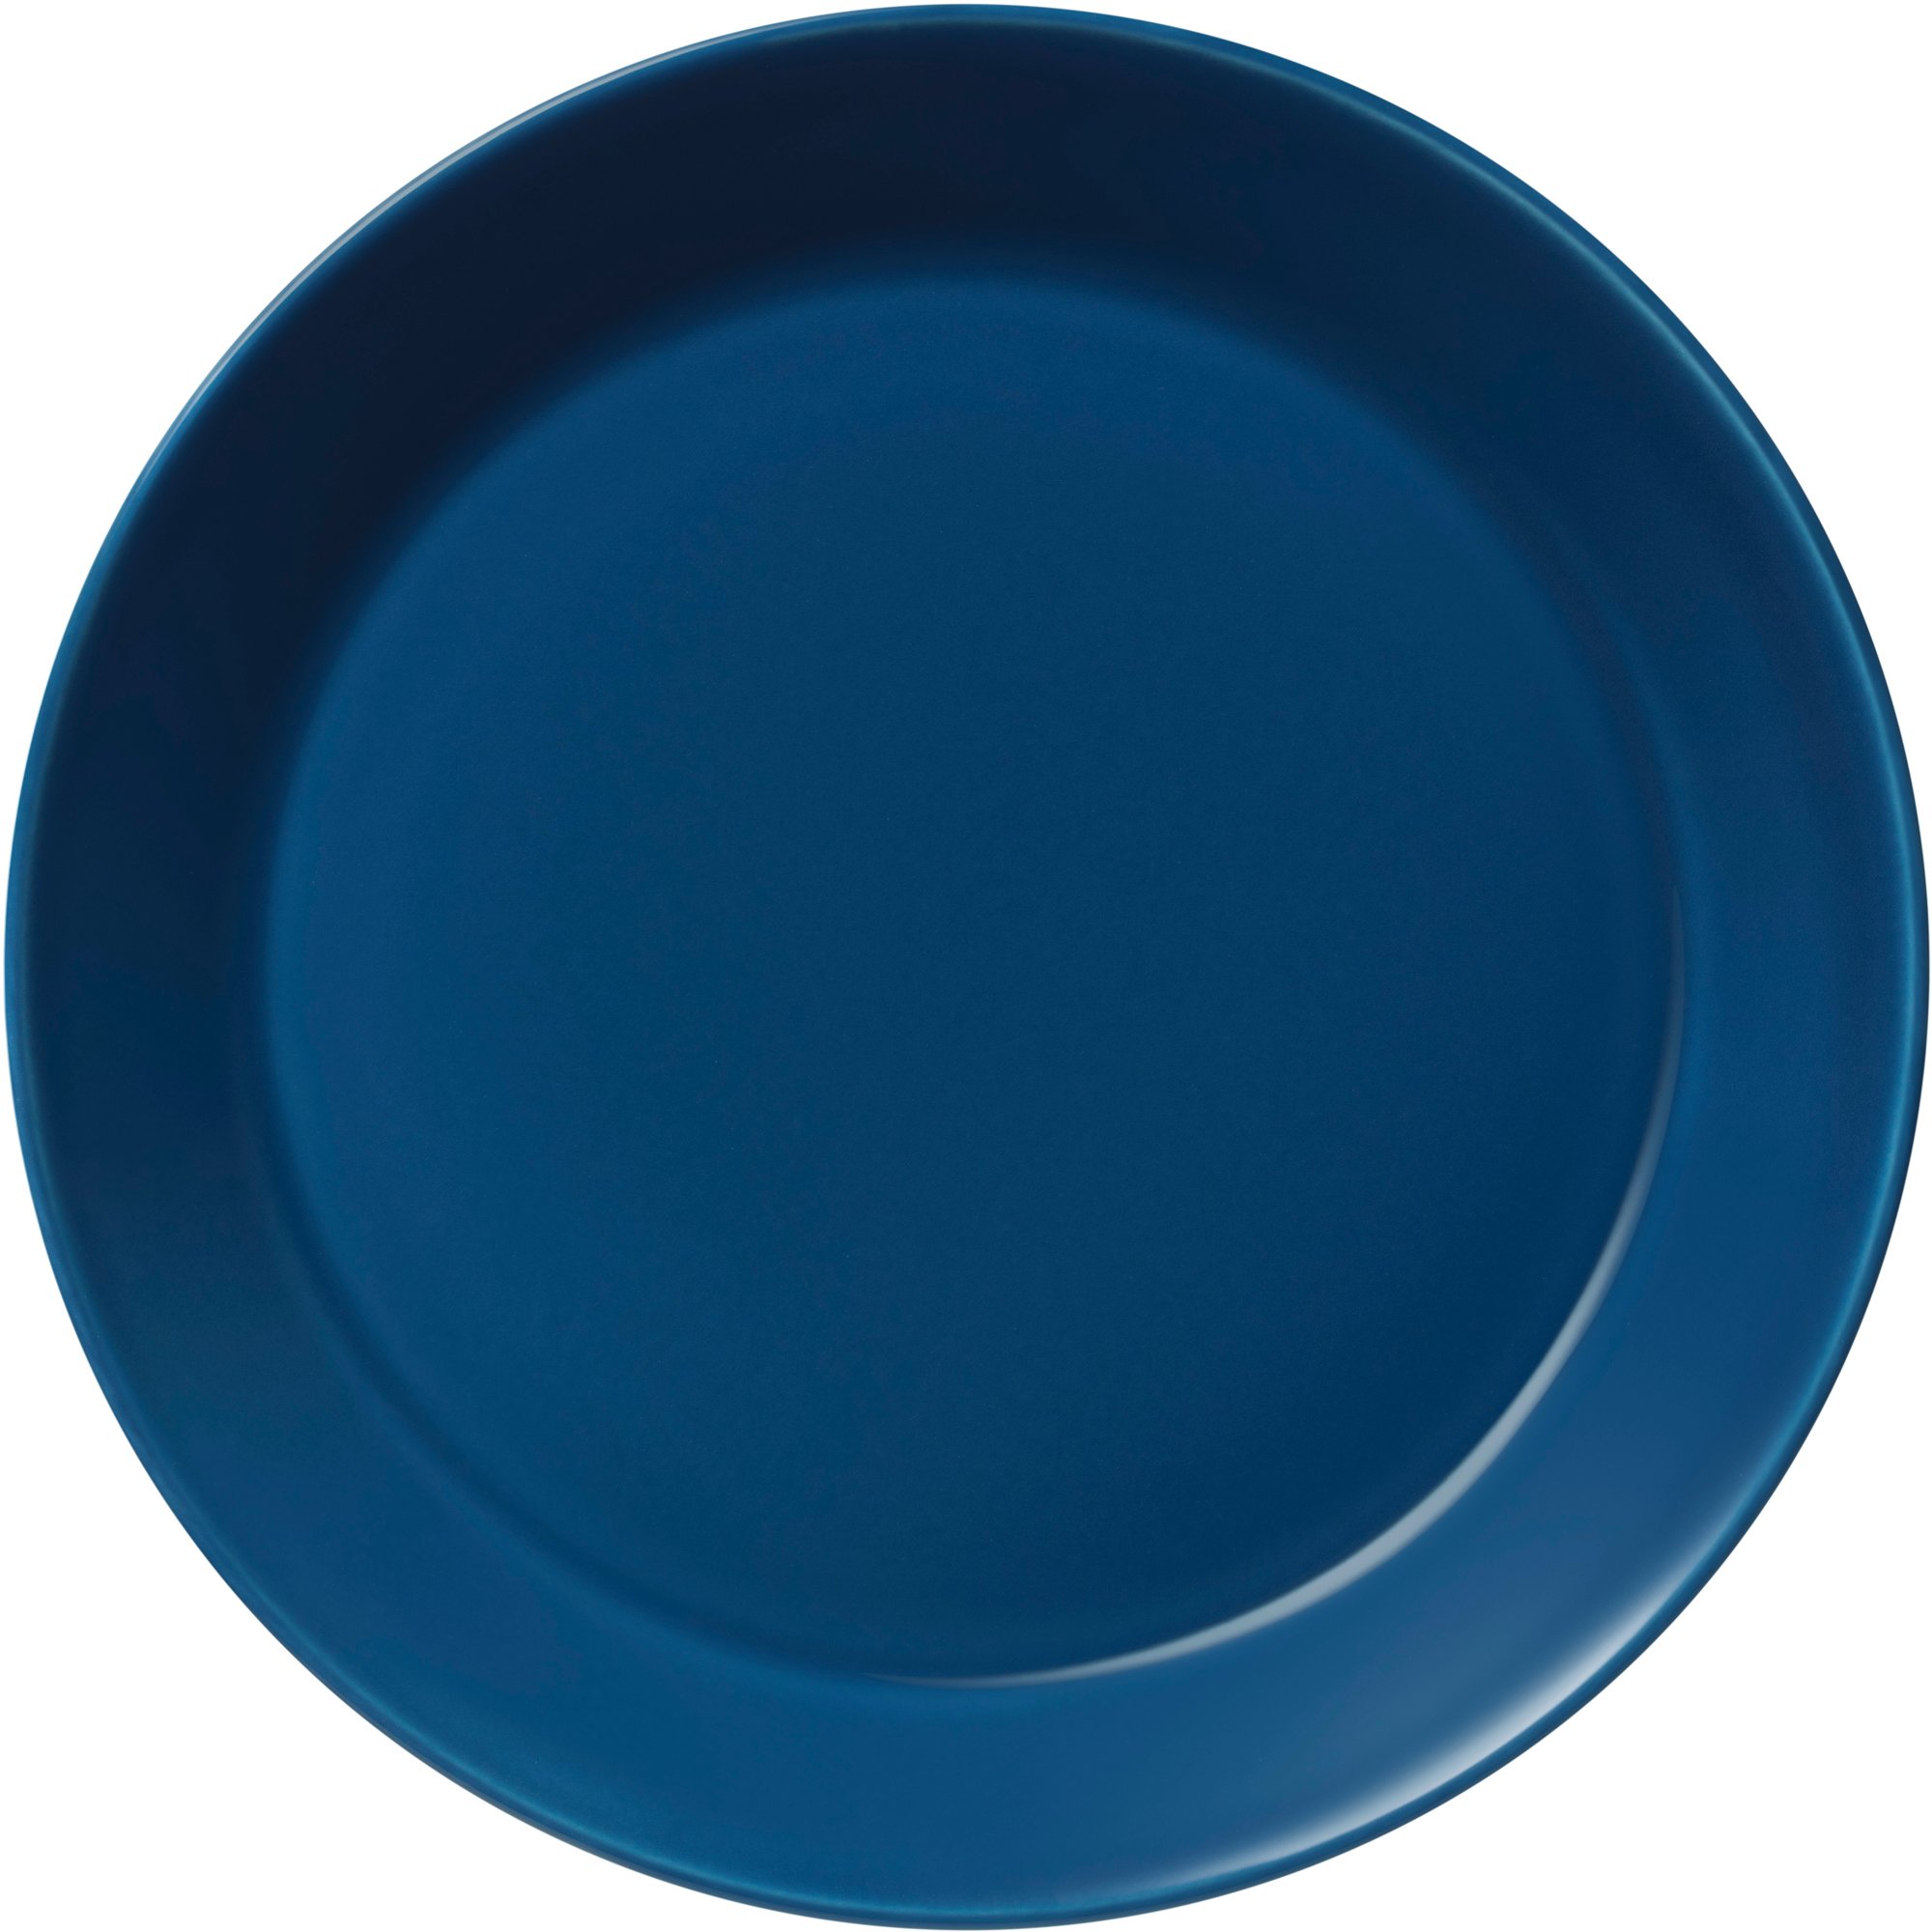 Iittala Teema tallrik, 21 cm, vintage blå